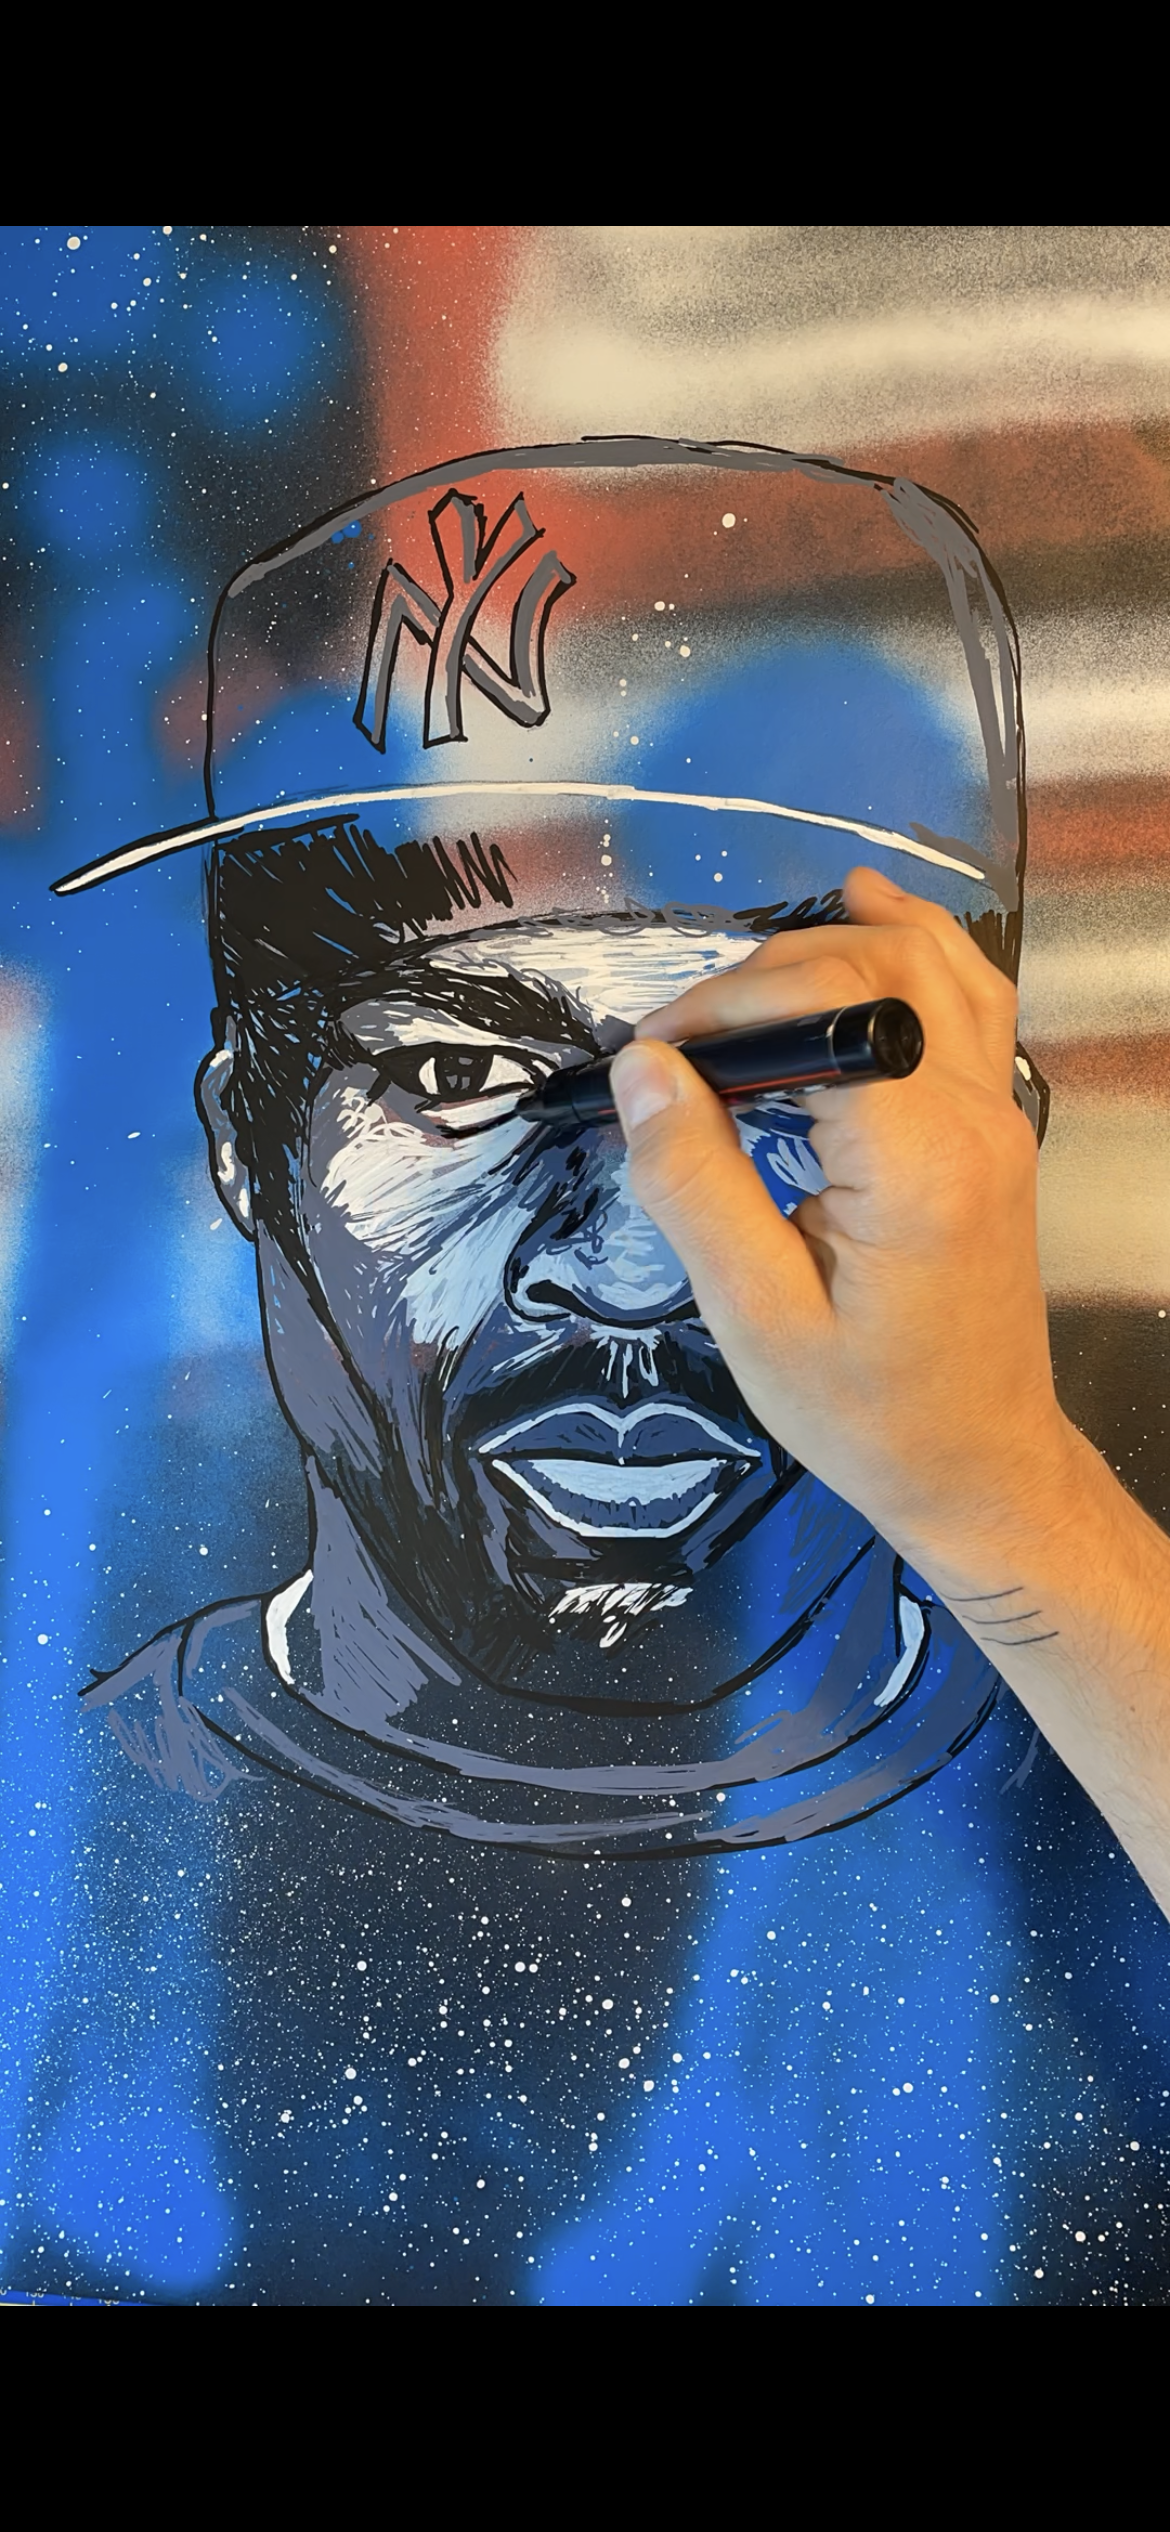 (RED/BLUE) 50 Cent I love NY Original